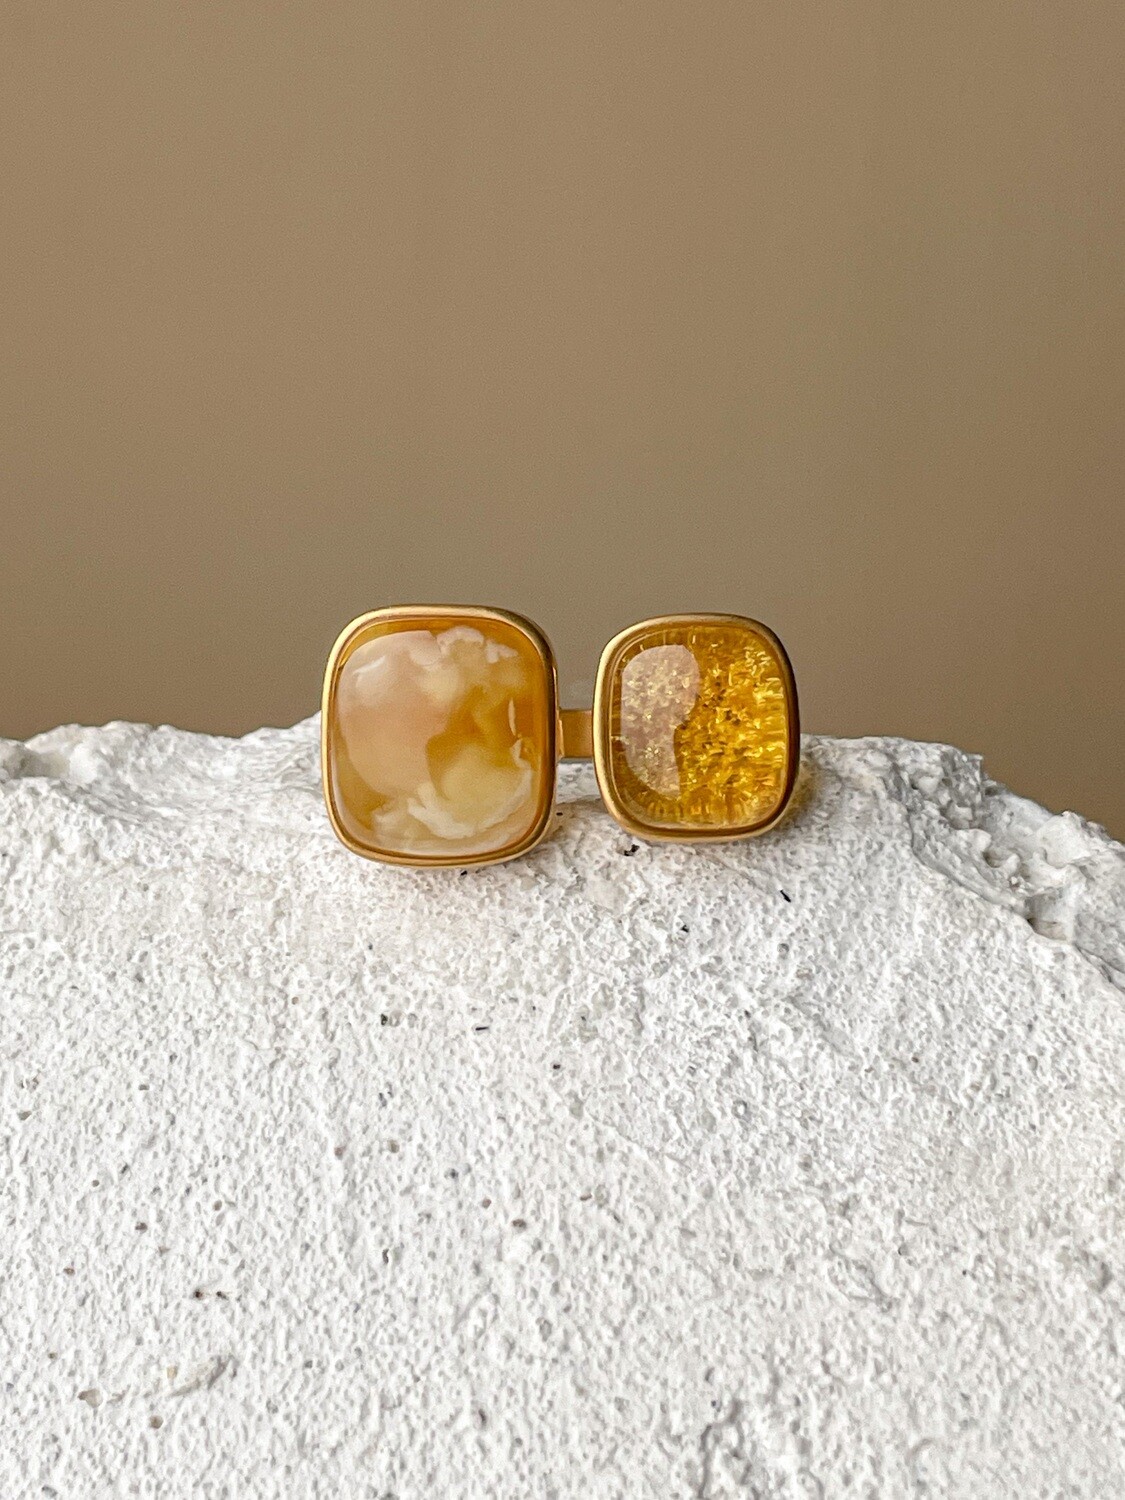 Двойное кольцо с медовым янтарем, размер 18,25